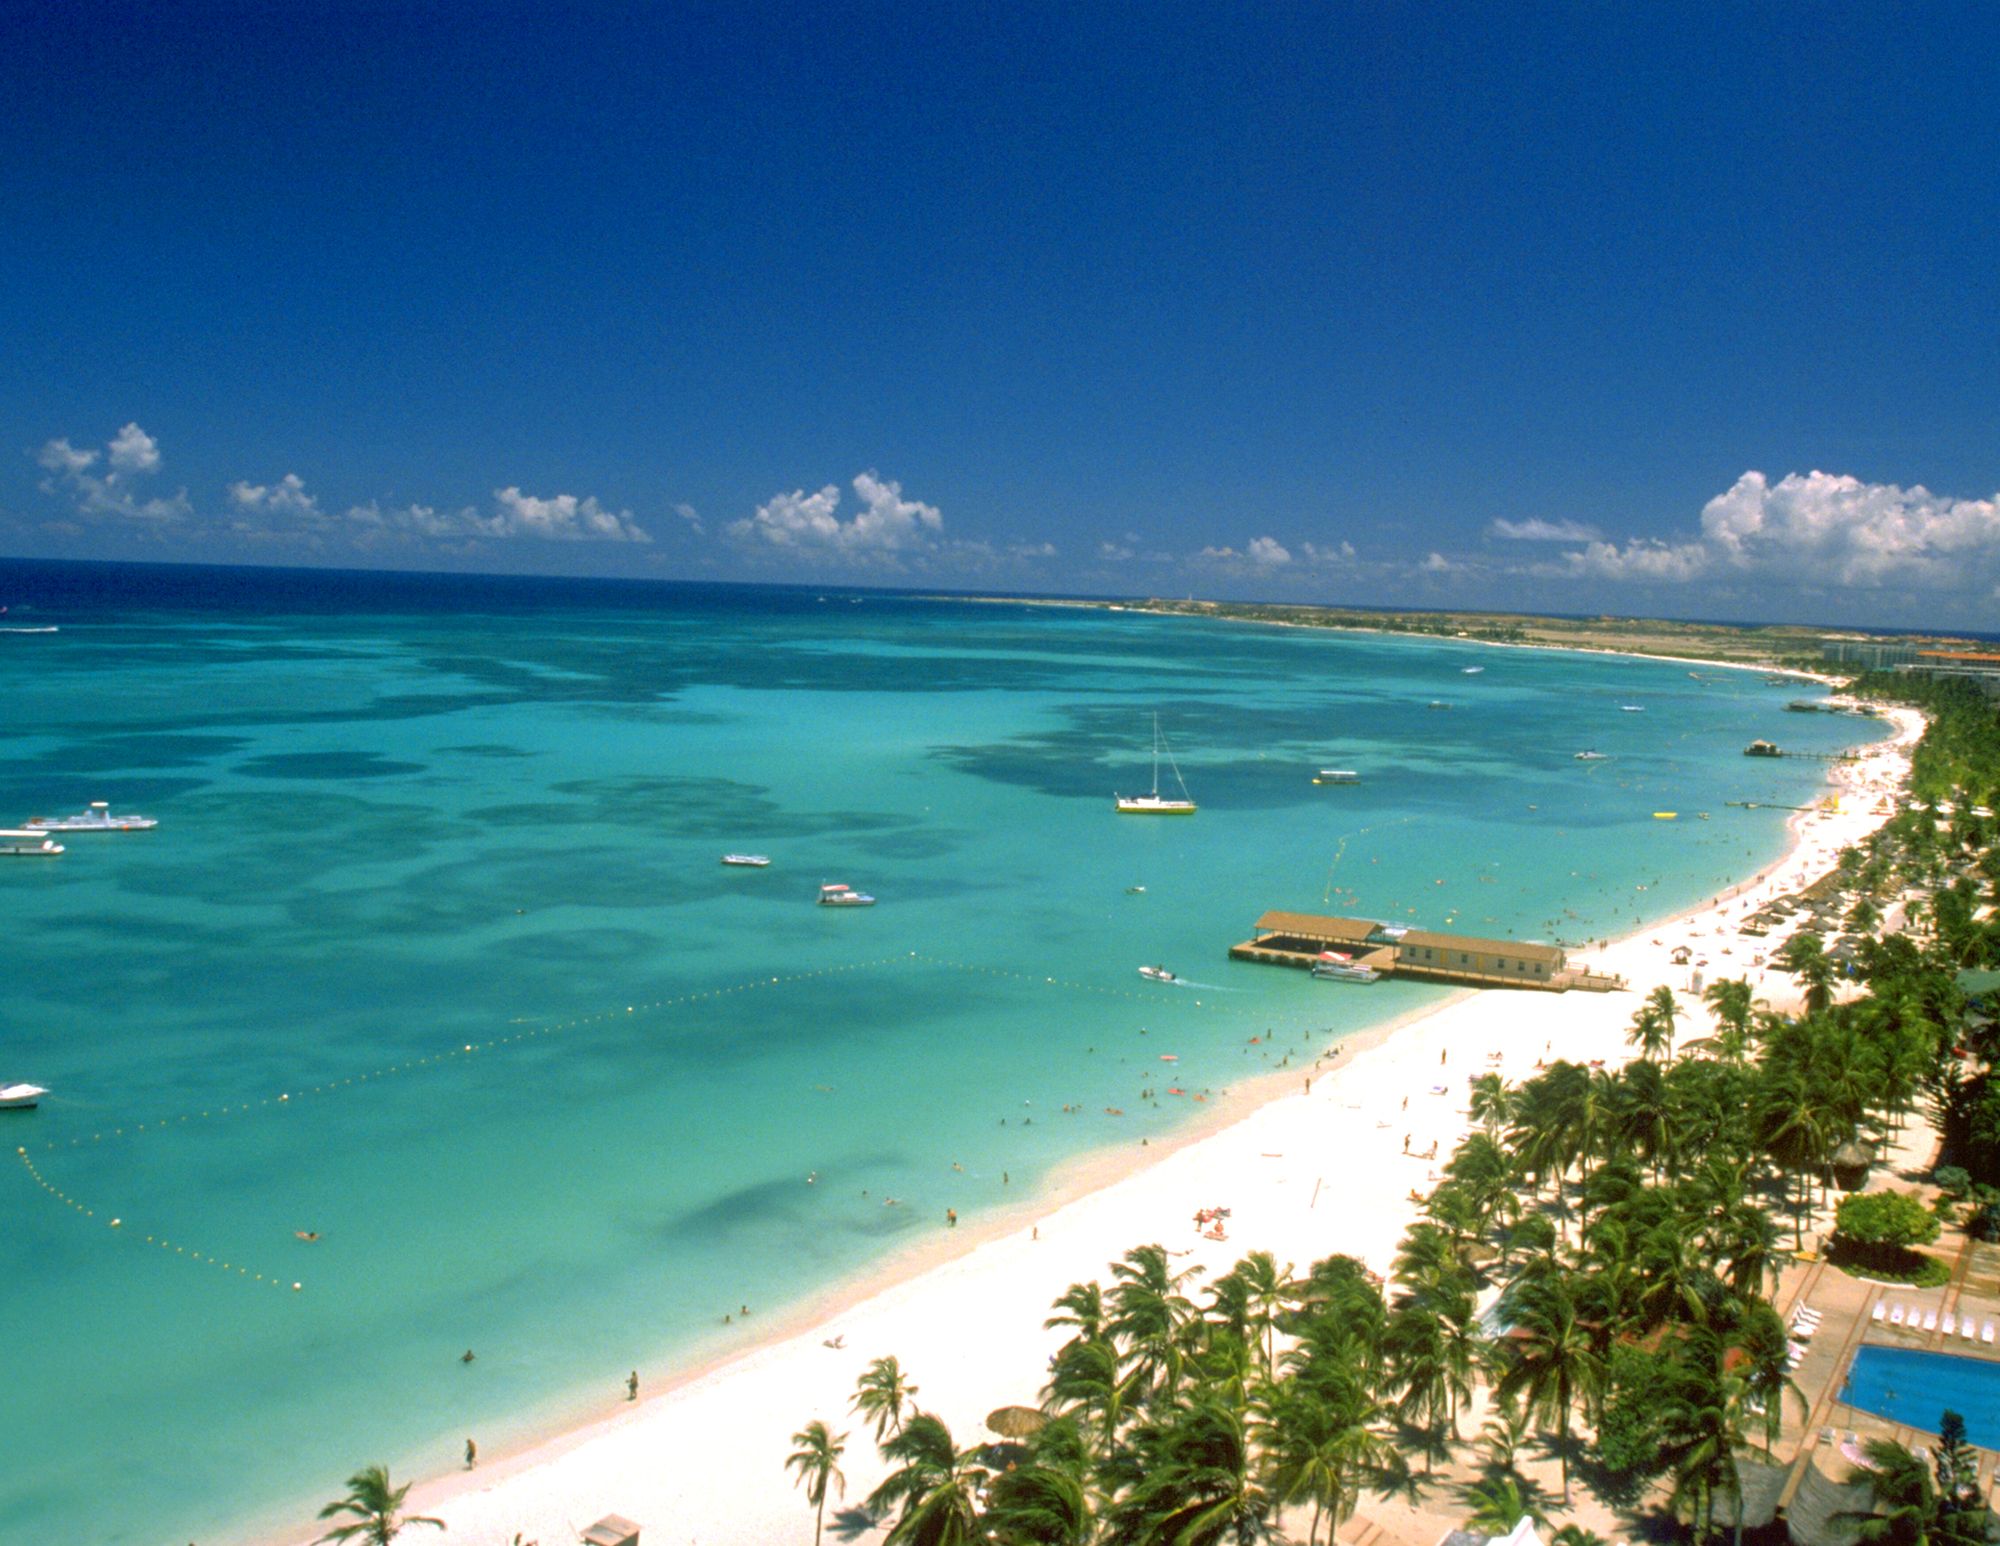 Der 3 km lange Palm Beach auf Aruba lockt Schwimmer, Schnorchler und Romantiker gleichermaßen.